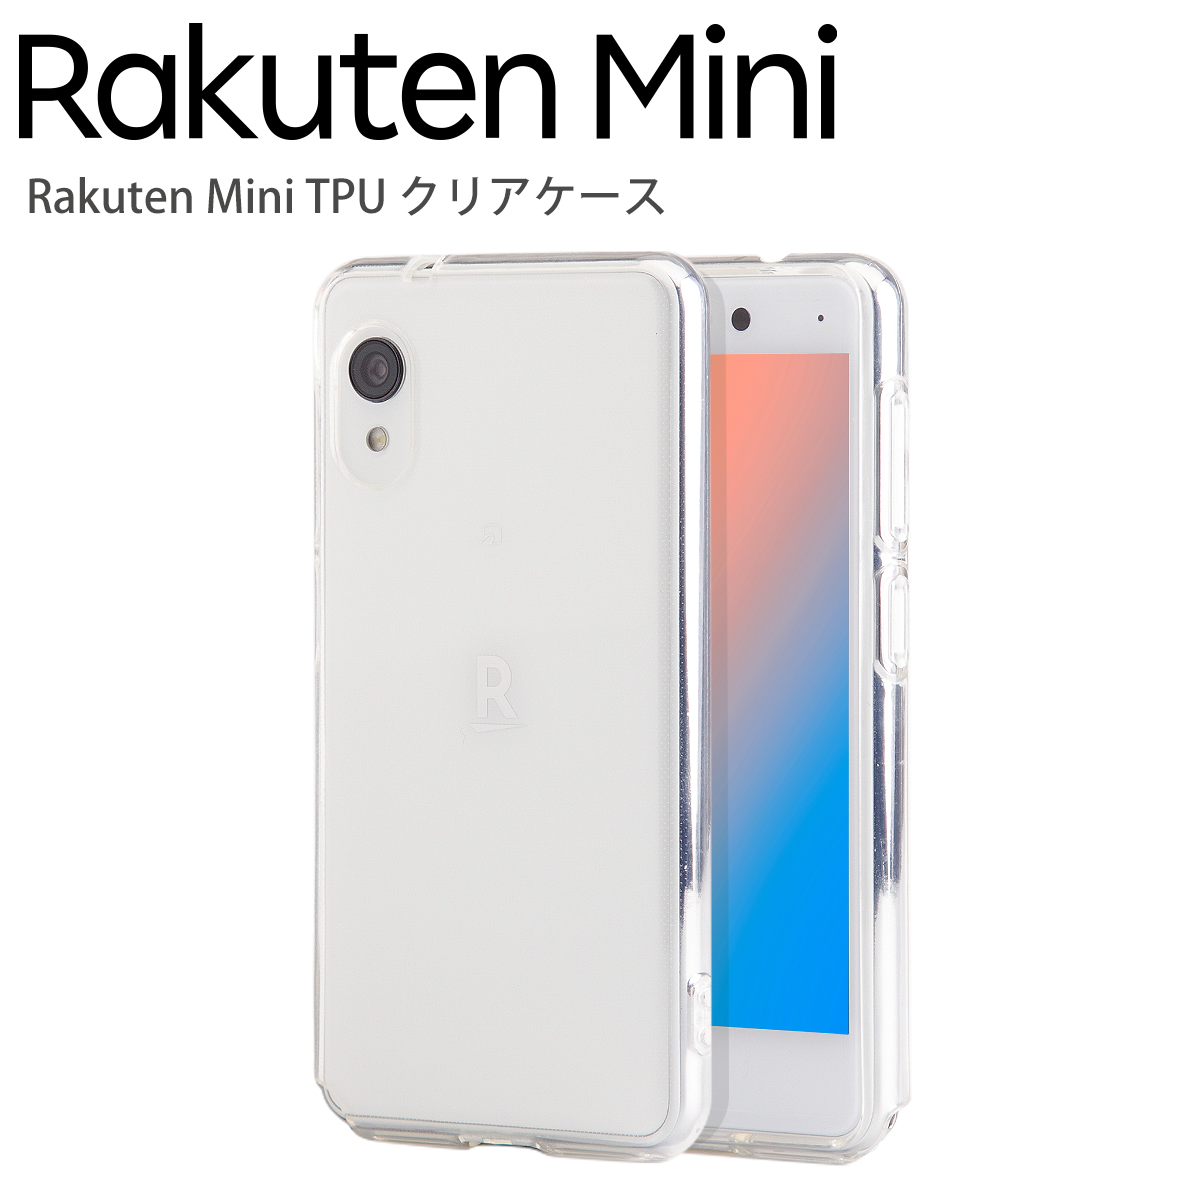 Rakuten Mini TPU クリアケース